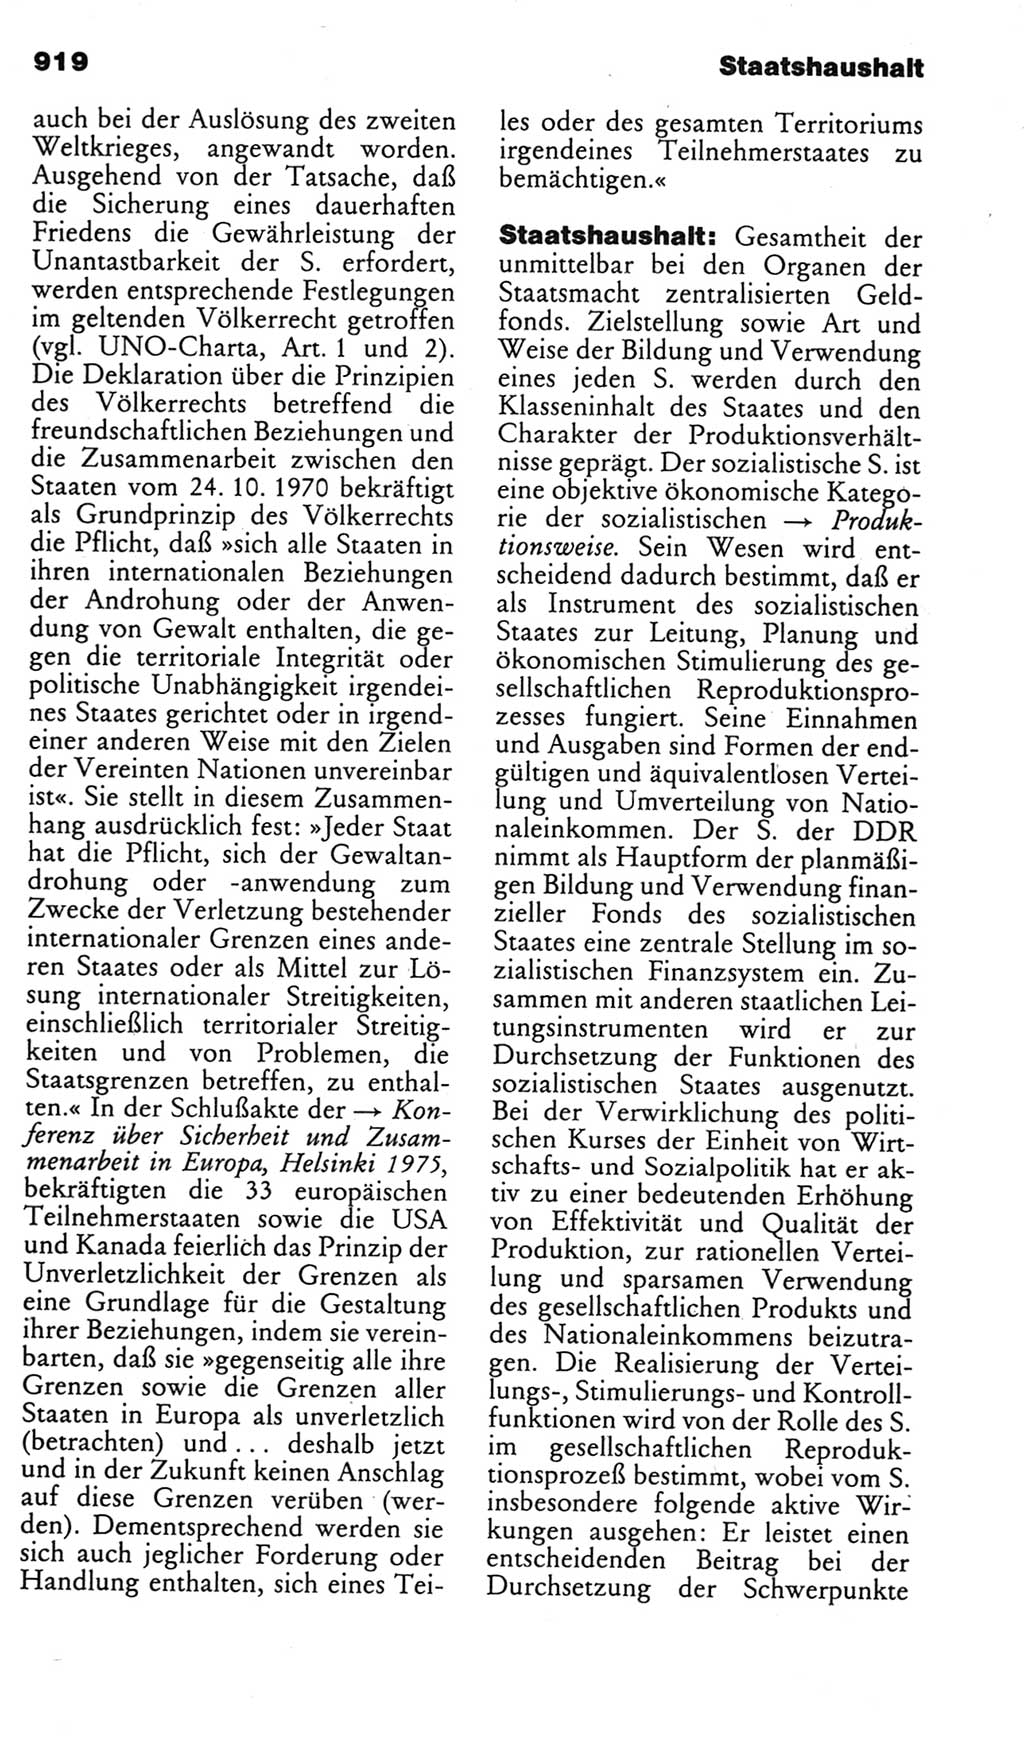 Kleines politisches Wörterbuch [Deutsche Demokratische Republik (DDR)] 1985, Seite 919 (Kl. pol. Wb. DDR 1985, S. 919)